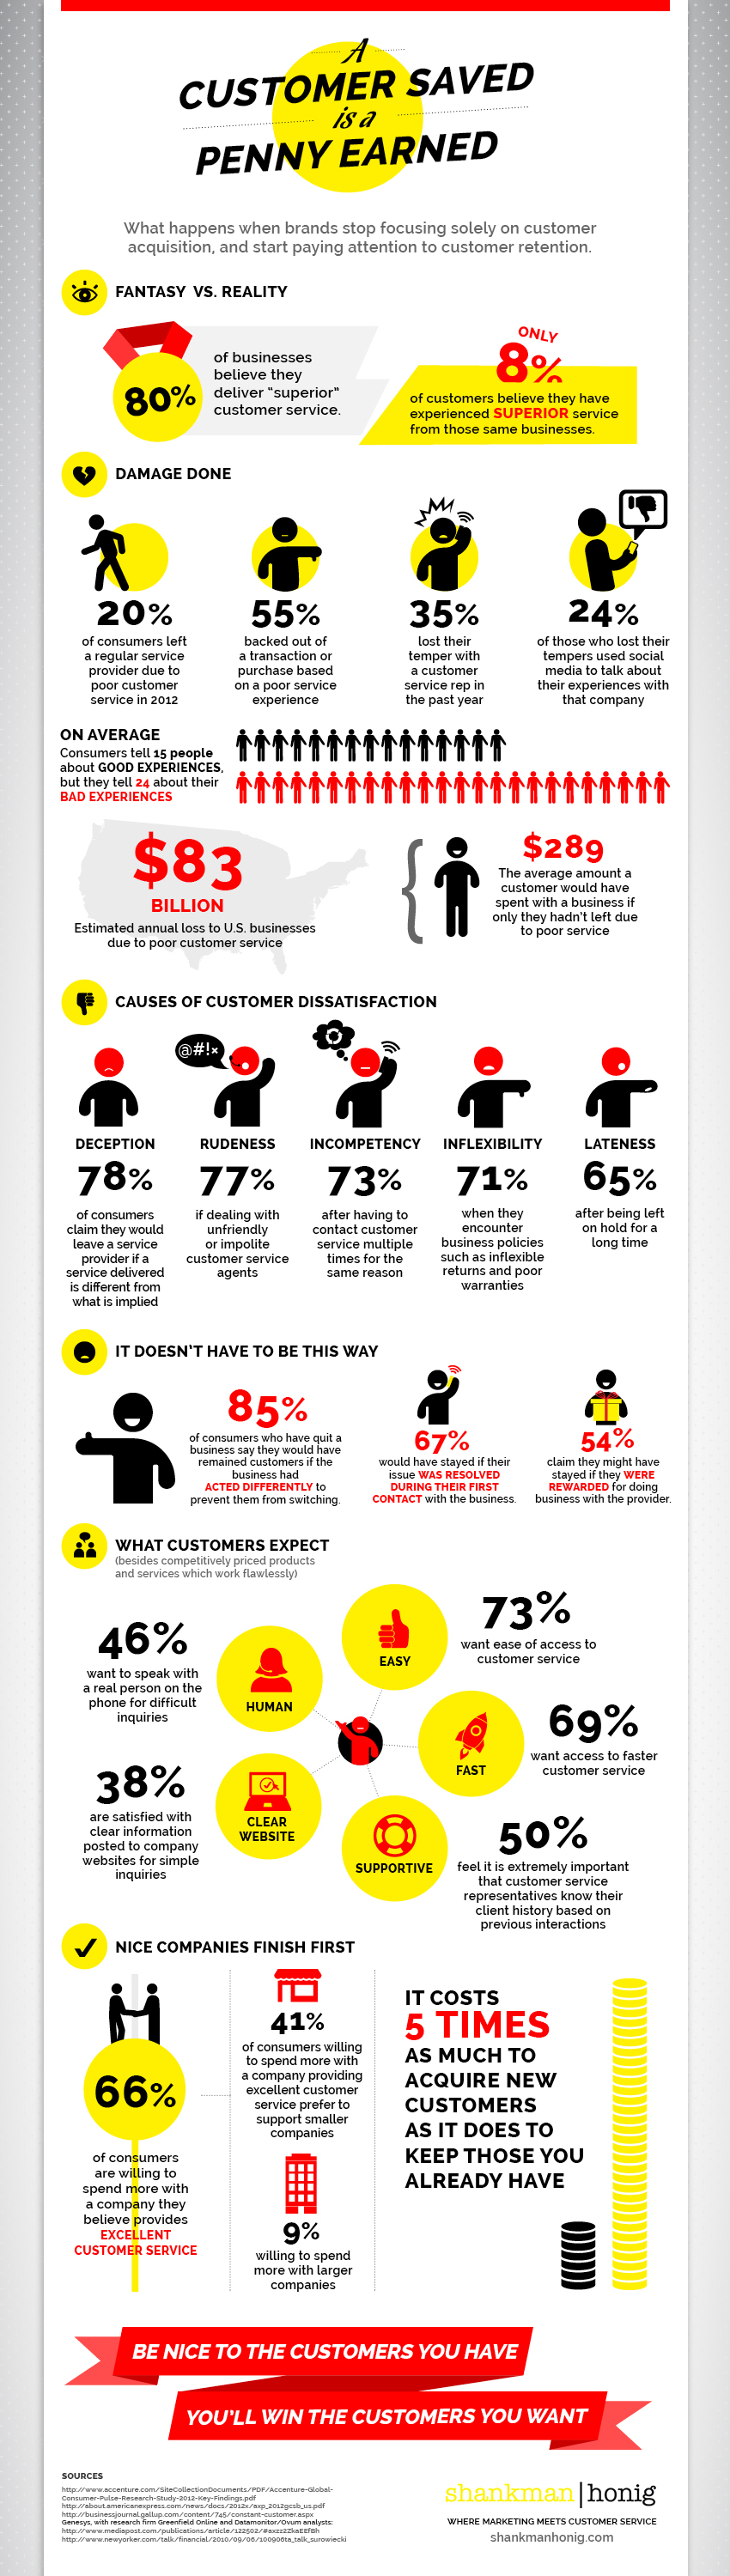 BrandMe - Customer Service Infographic Full